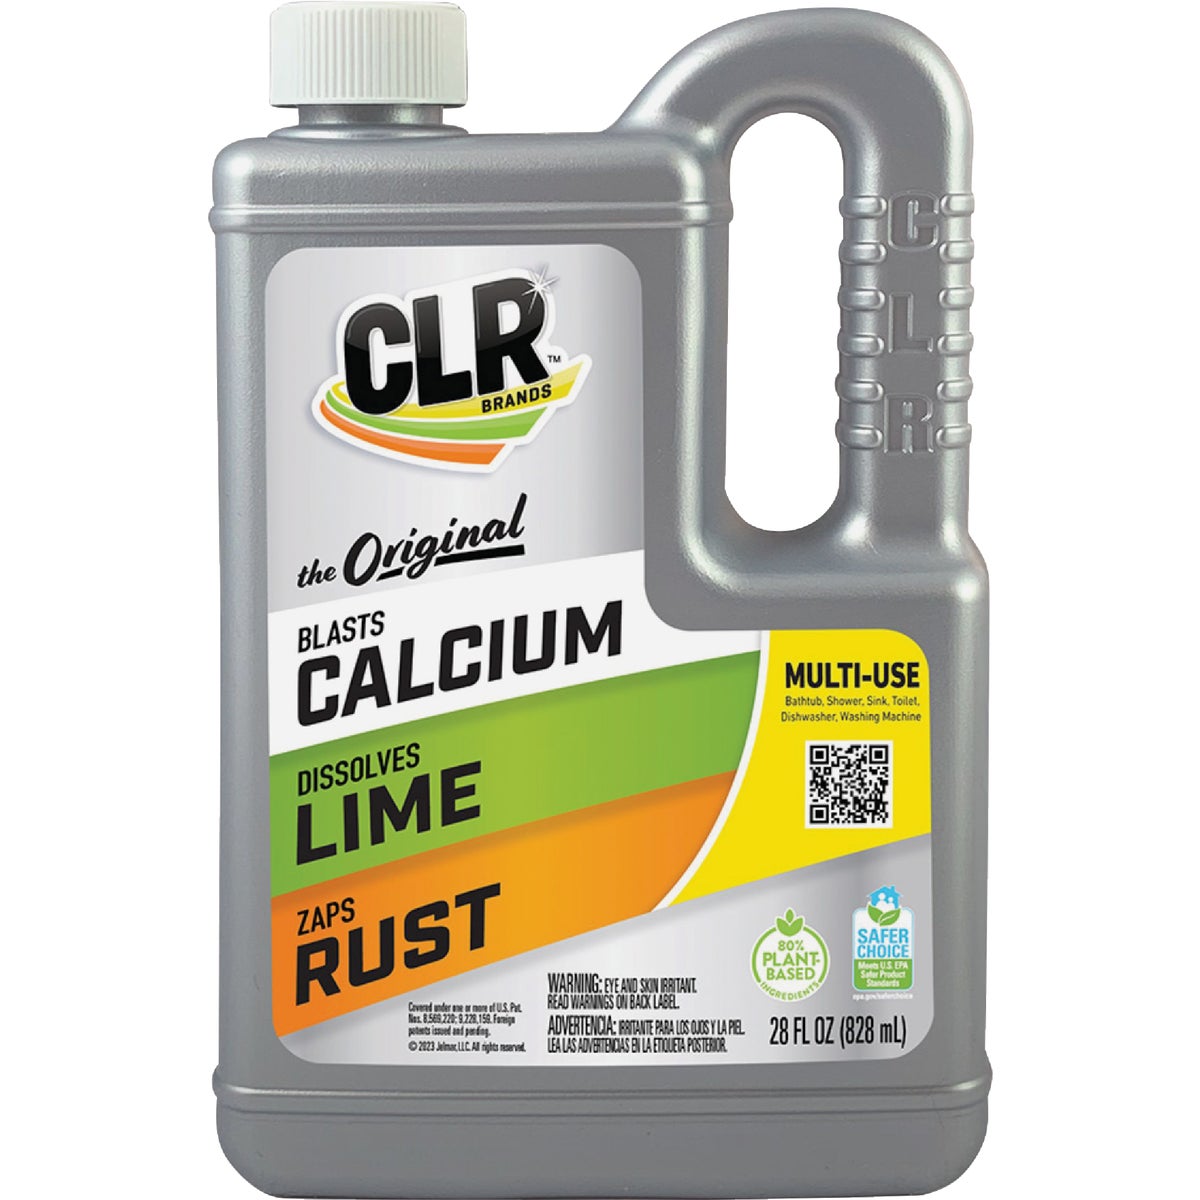 CLR 28 Oz. Calcium, Lime & Rust Remover